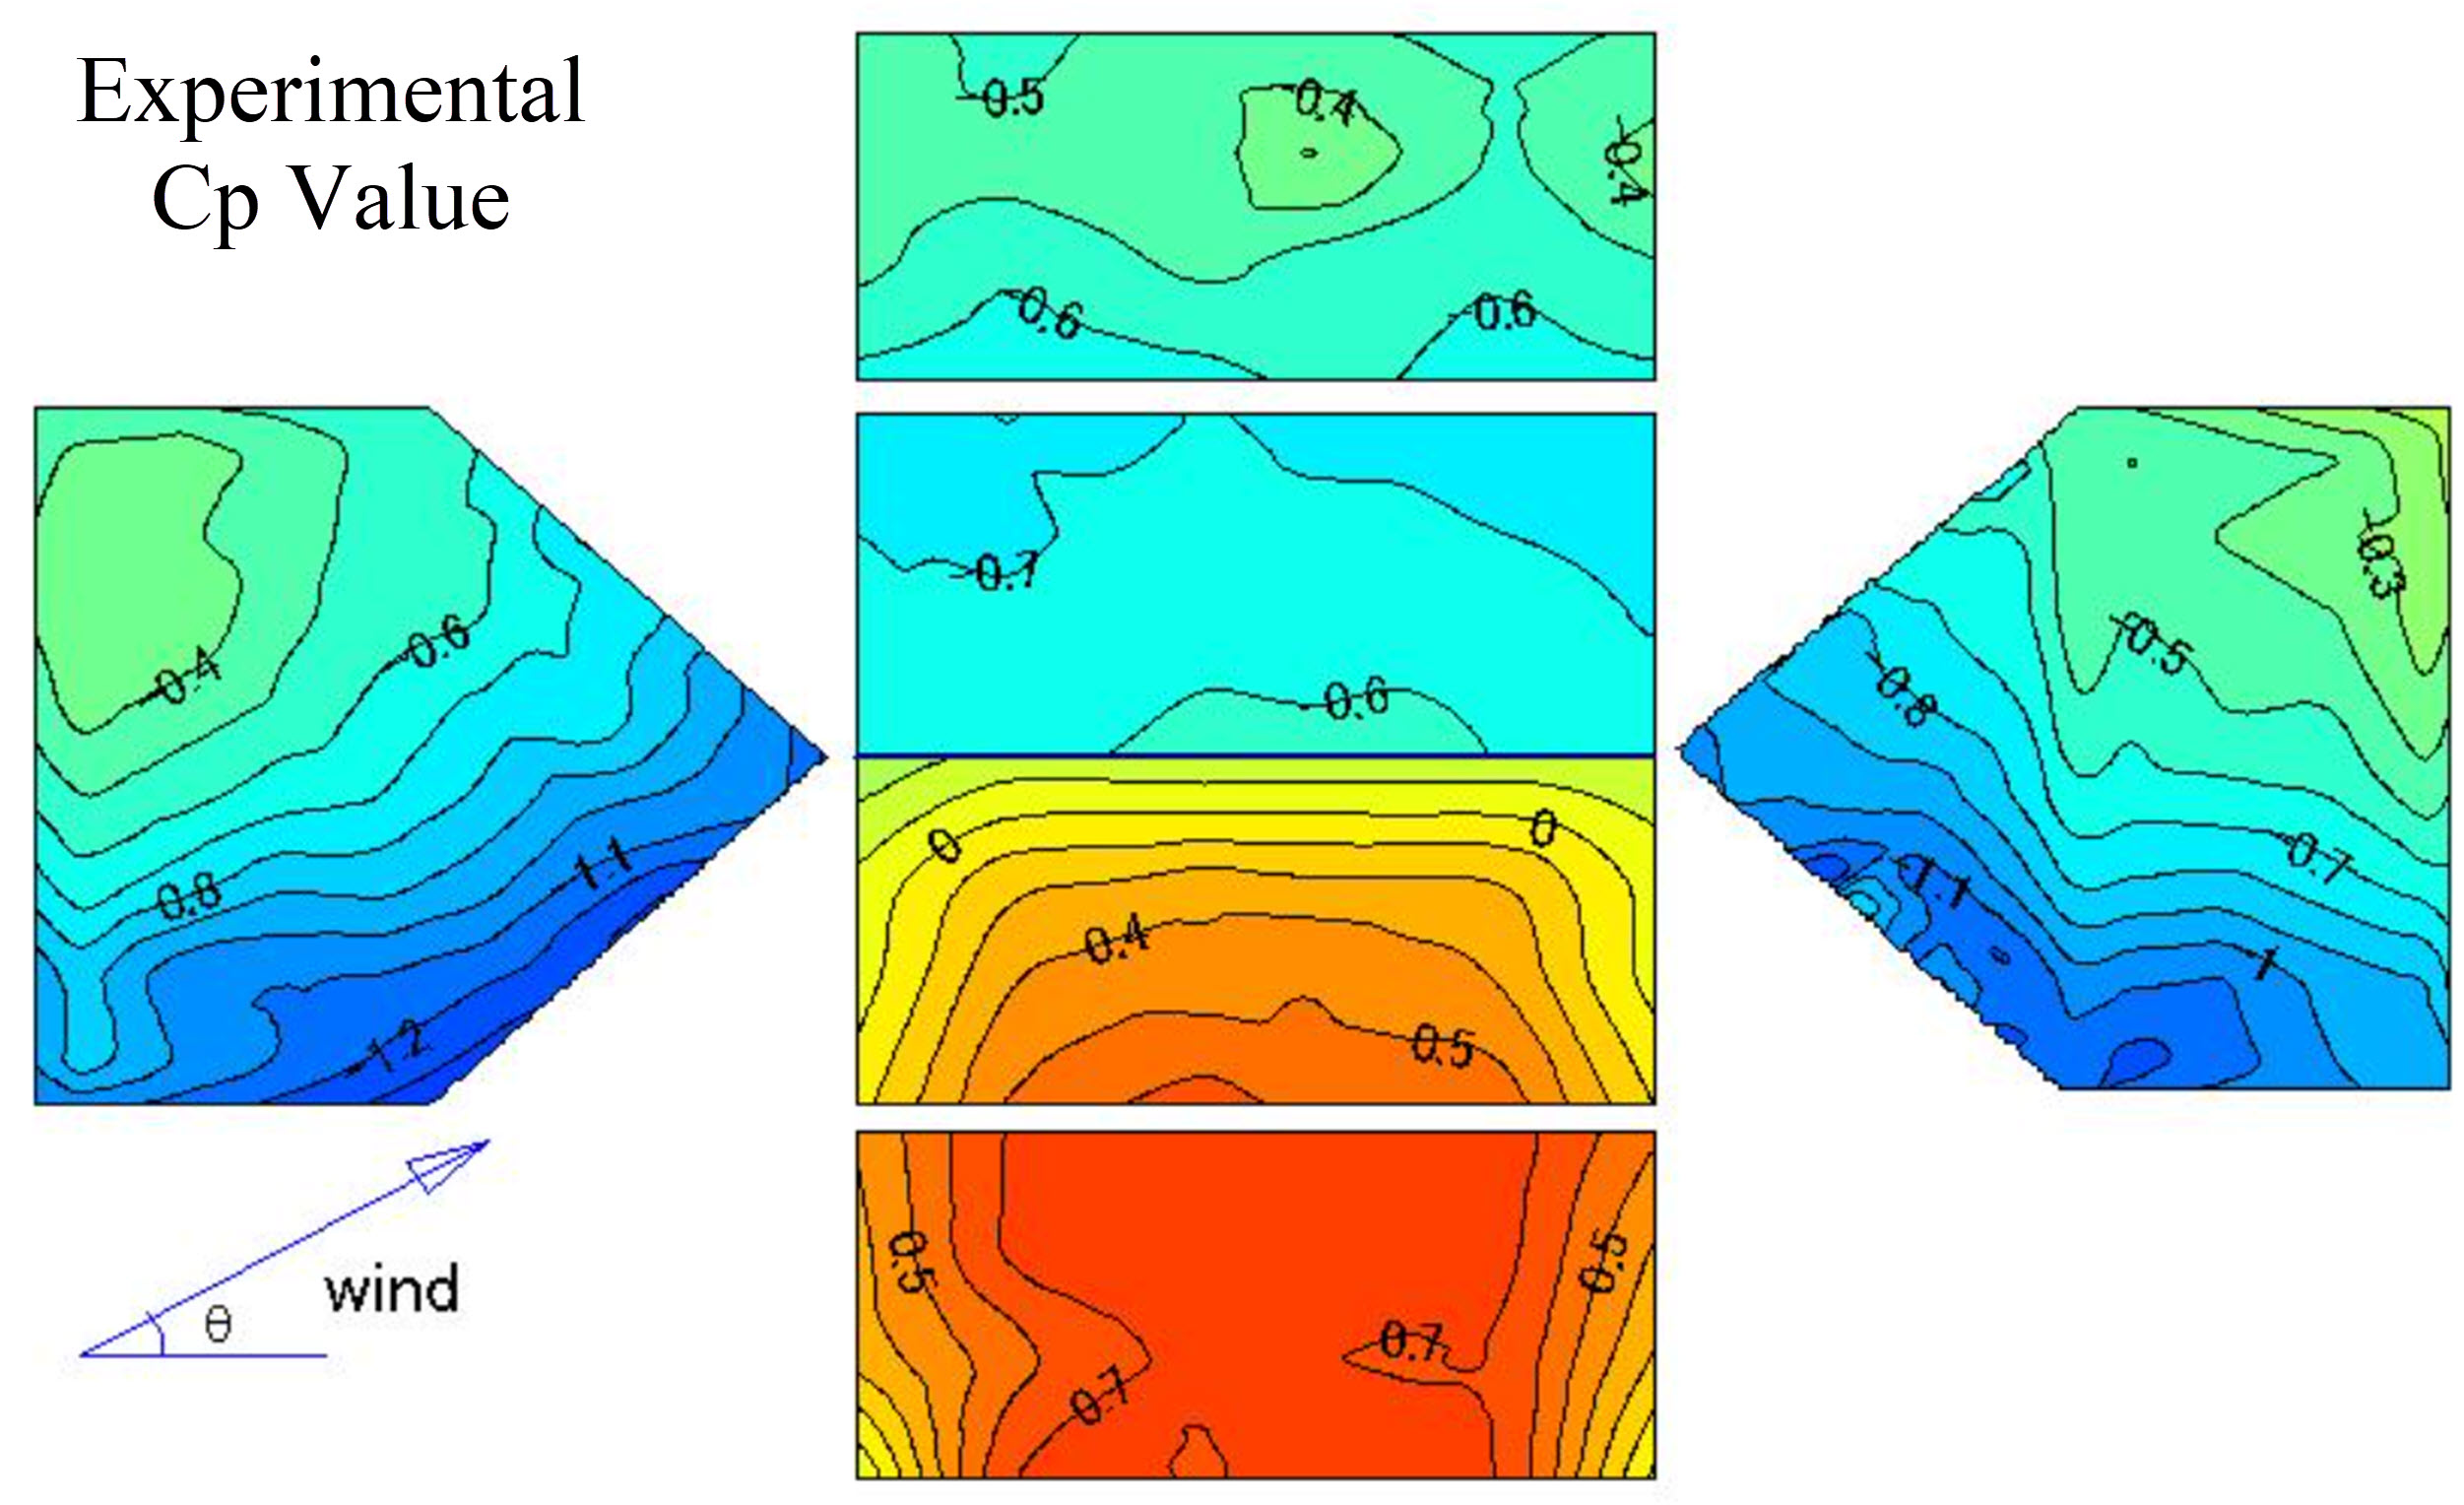 Obrázek 3: Experimentální hodnota Cp na základě japonské databáze větrných tunelů